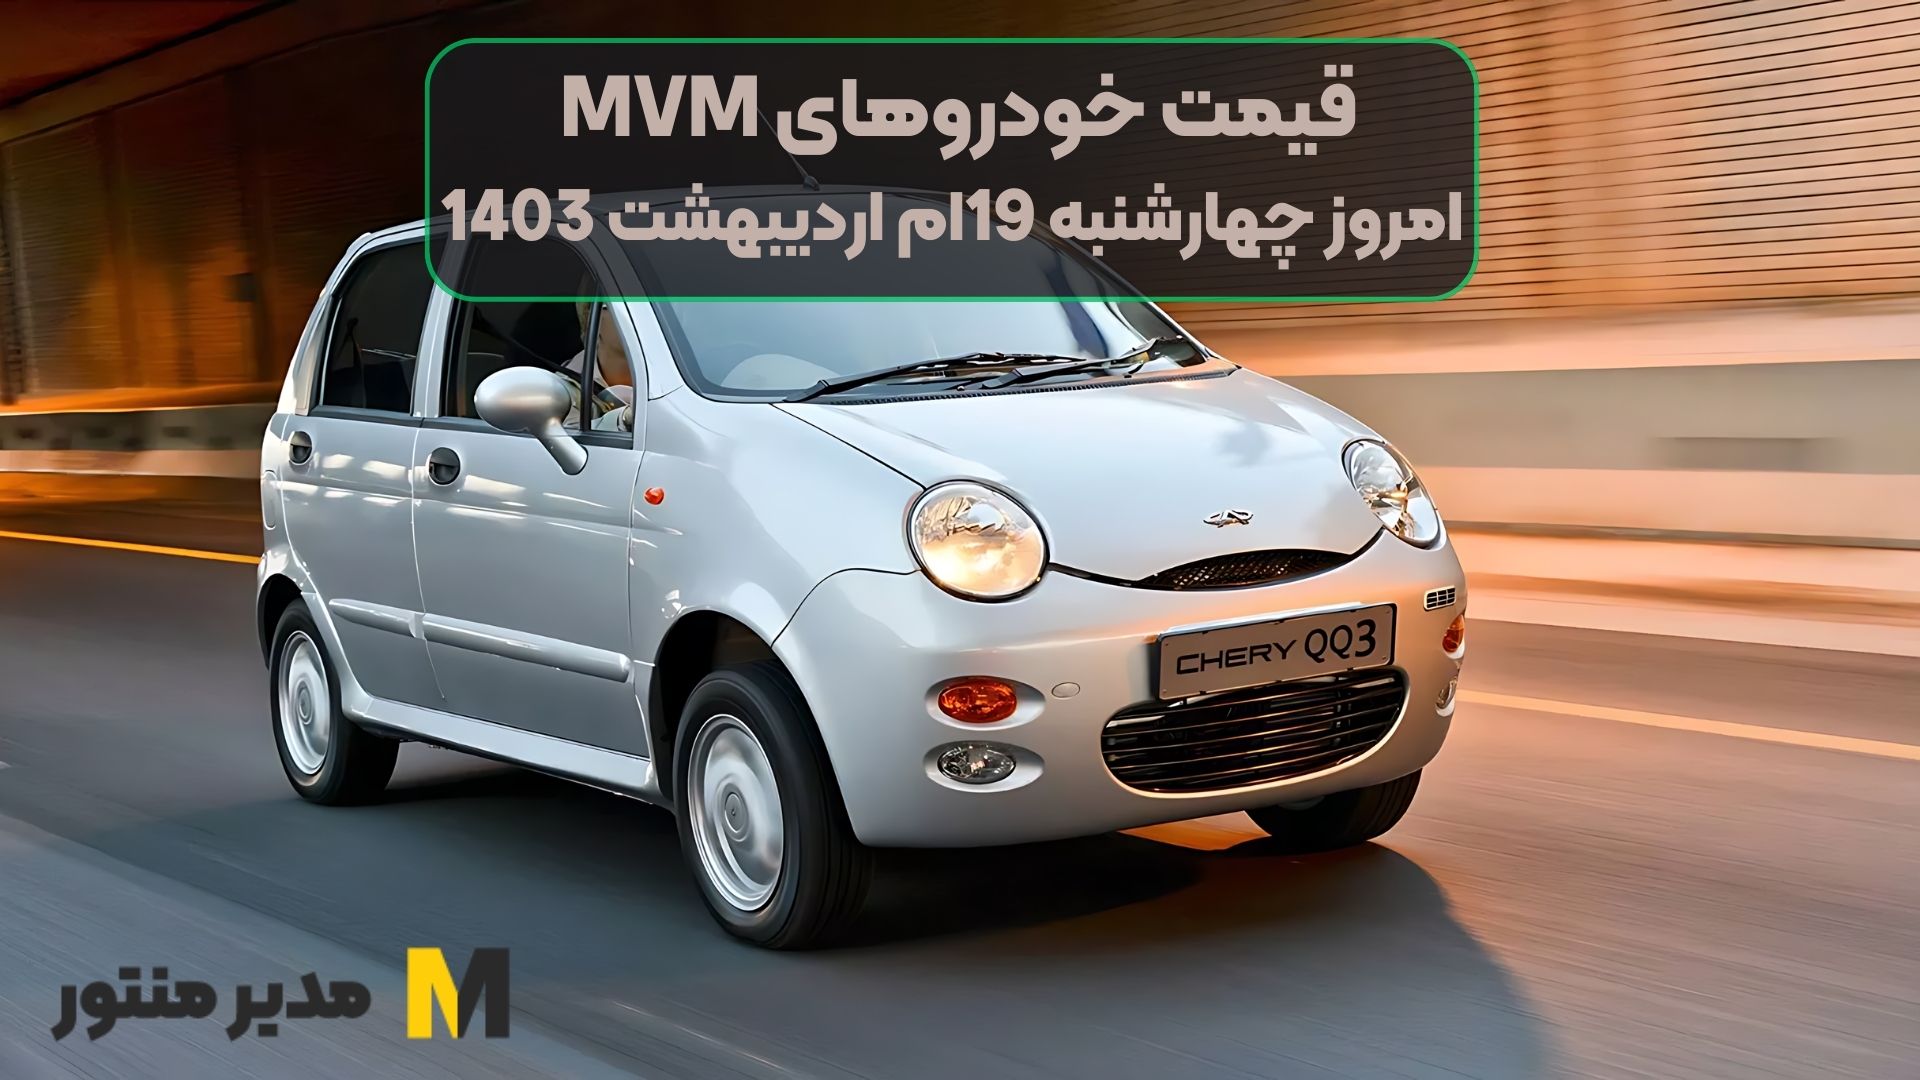 قیمت خودروهای MVM امروز چهارشنبه 19ام اردیبهشت 1403